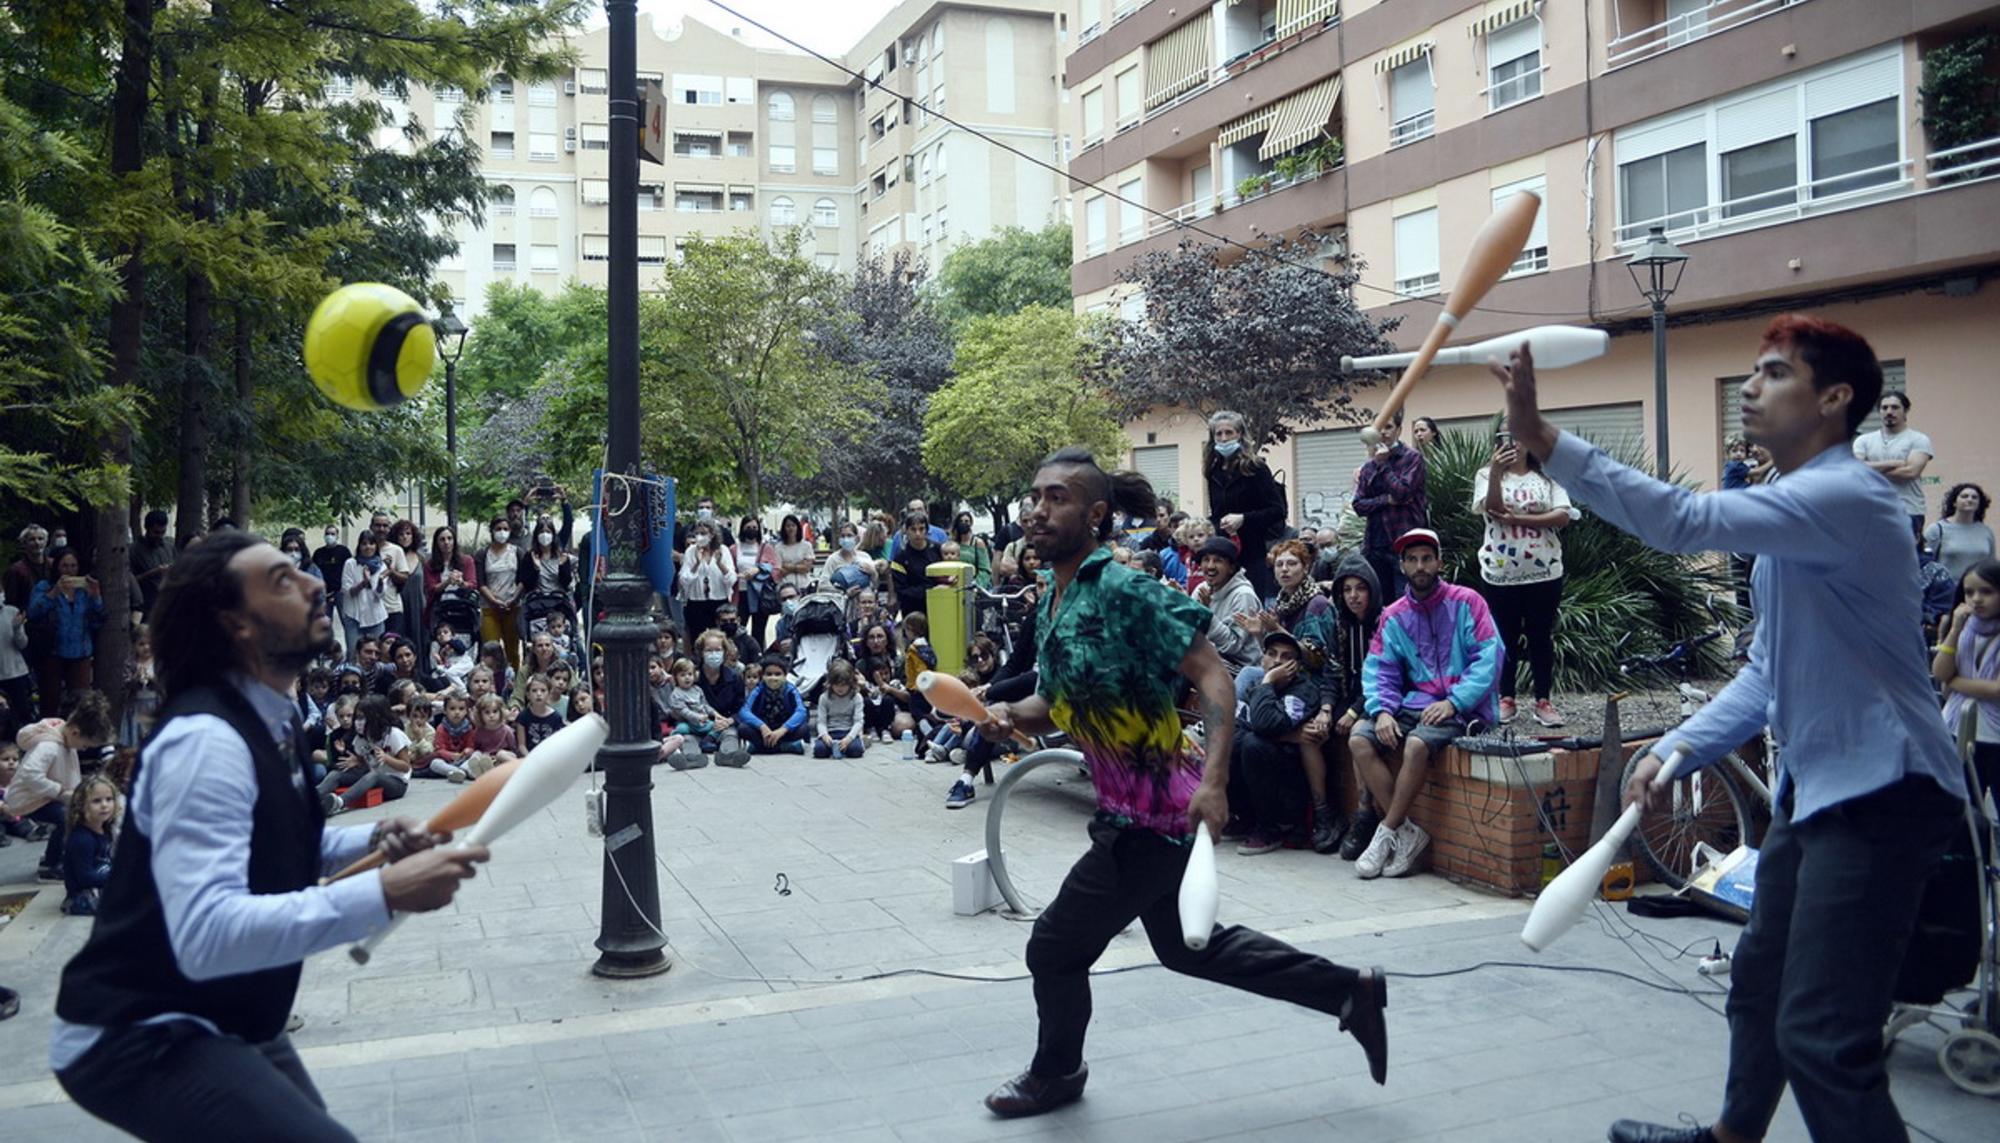 Festival ConFUSIÓN, arte y música en comunidad en el barrio valenciano de Benimaclet - 14